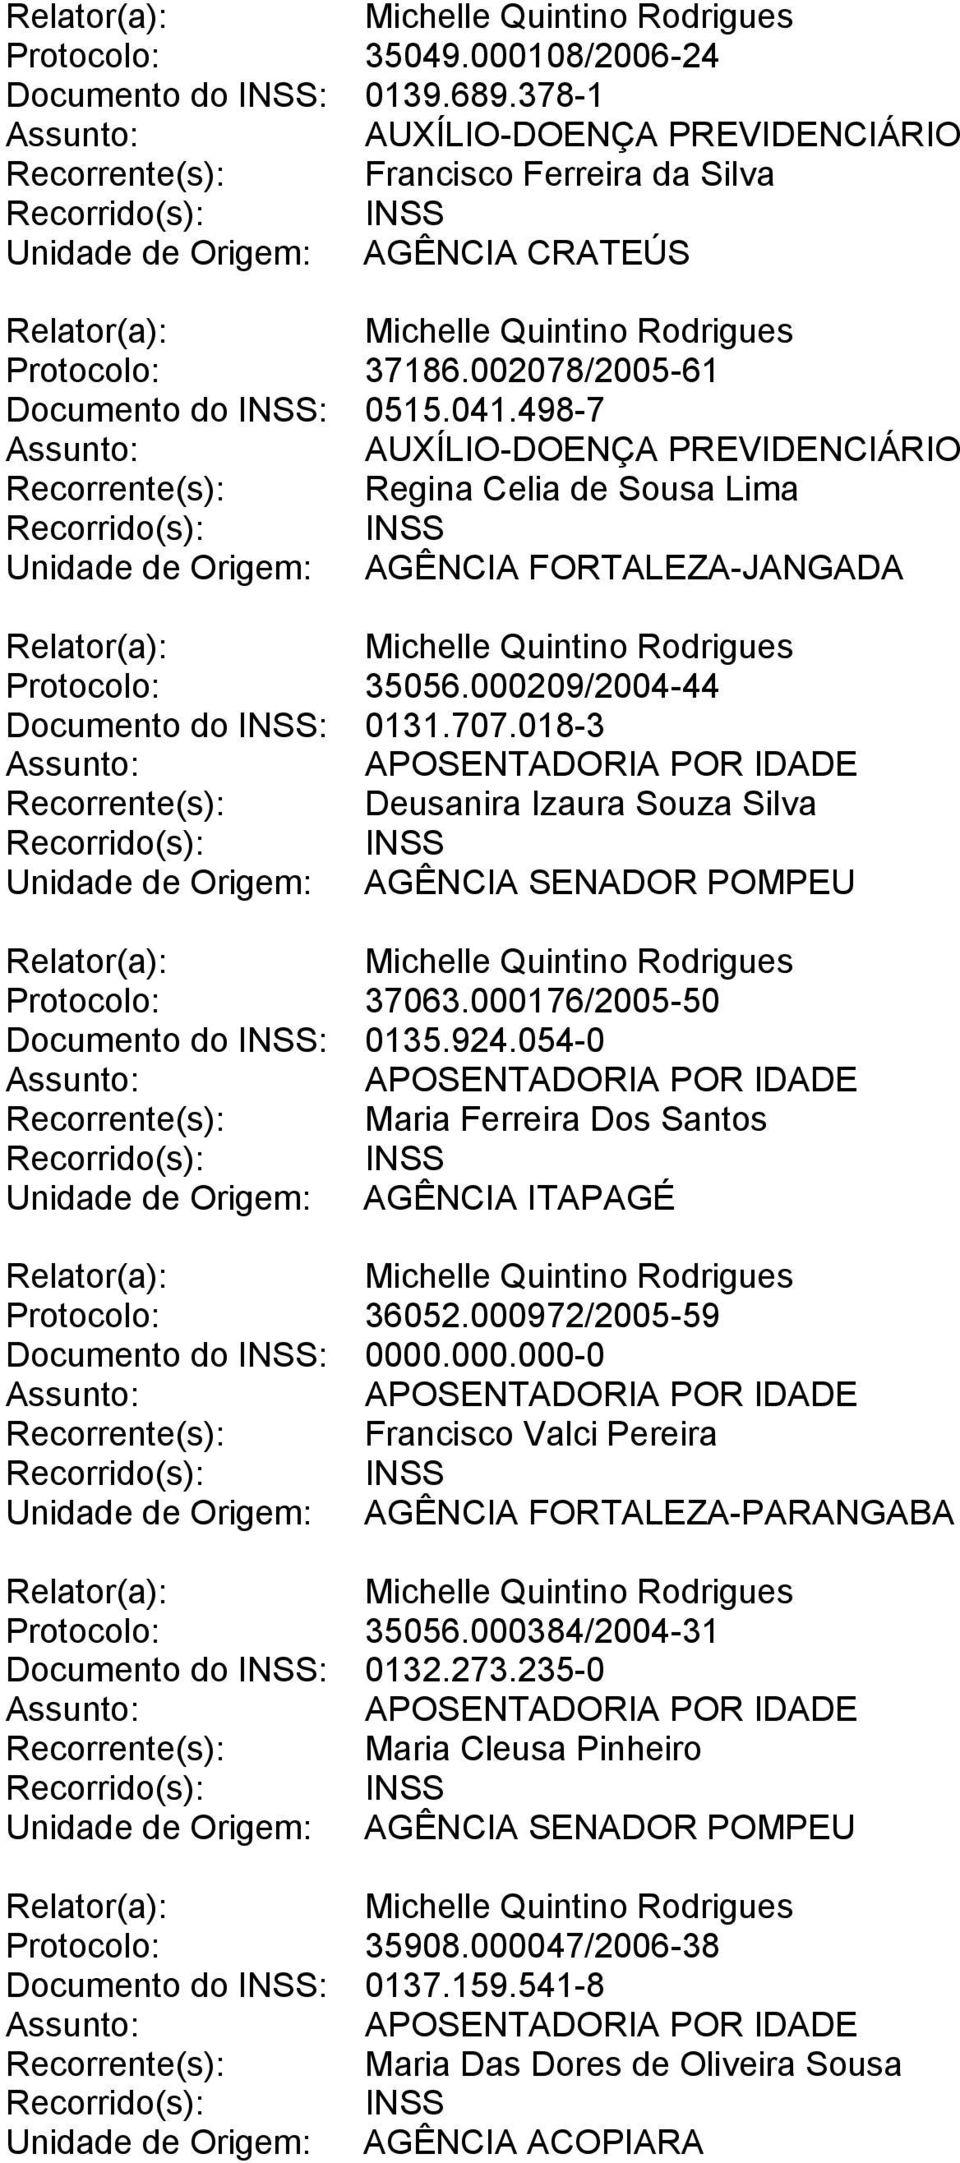 018-3 Recorrente(s): Deusanira Izaura Souza Silva Unidade de Origem: AGÊNCIA SENADOR POMPEU Protocolo: 37063.000176/2005-50 Documento do INSS: 0135.924.